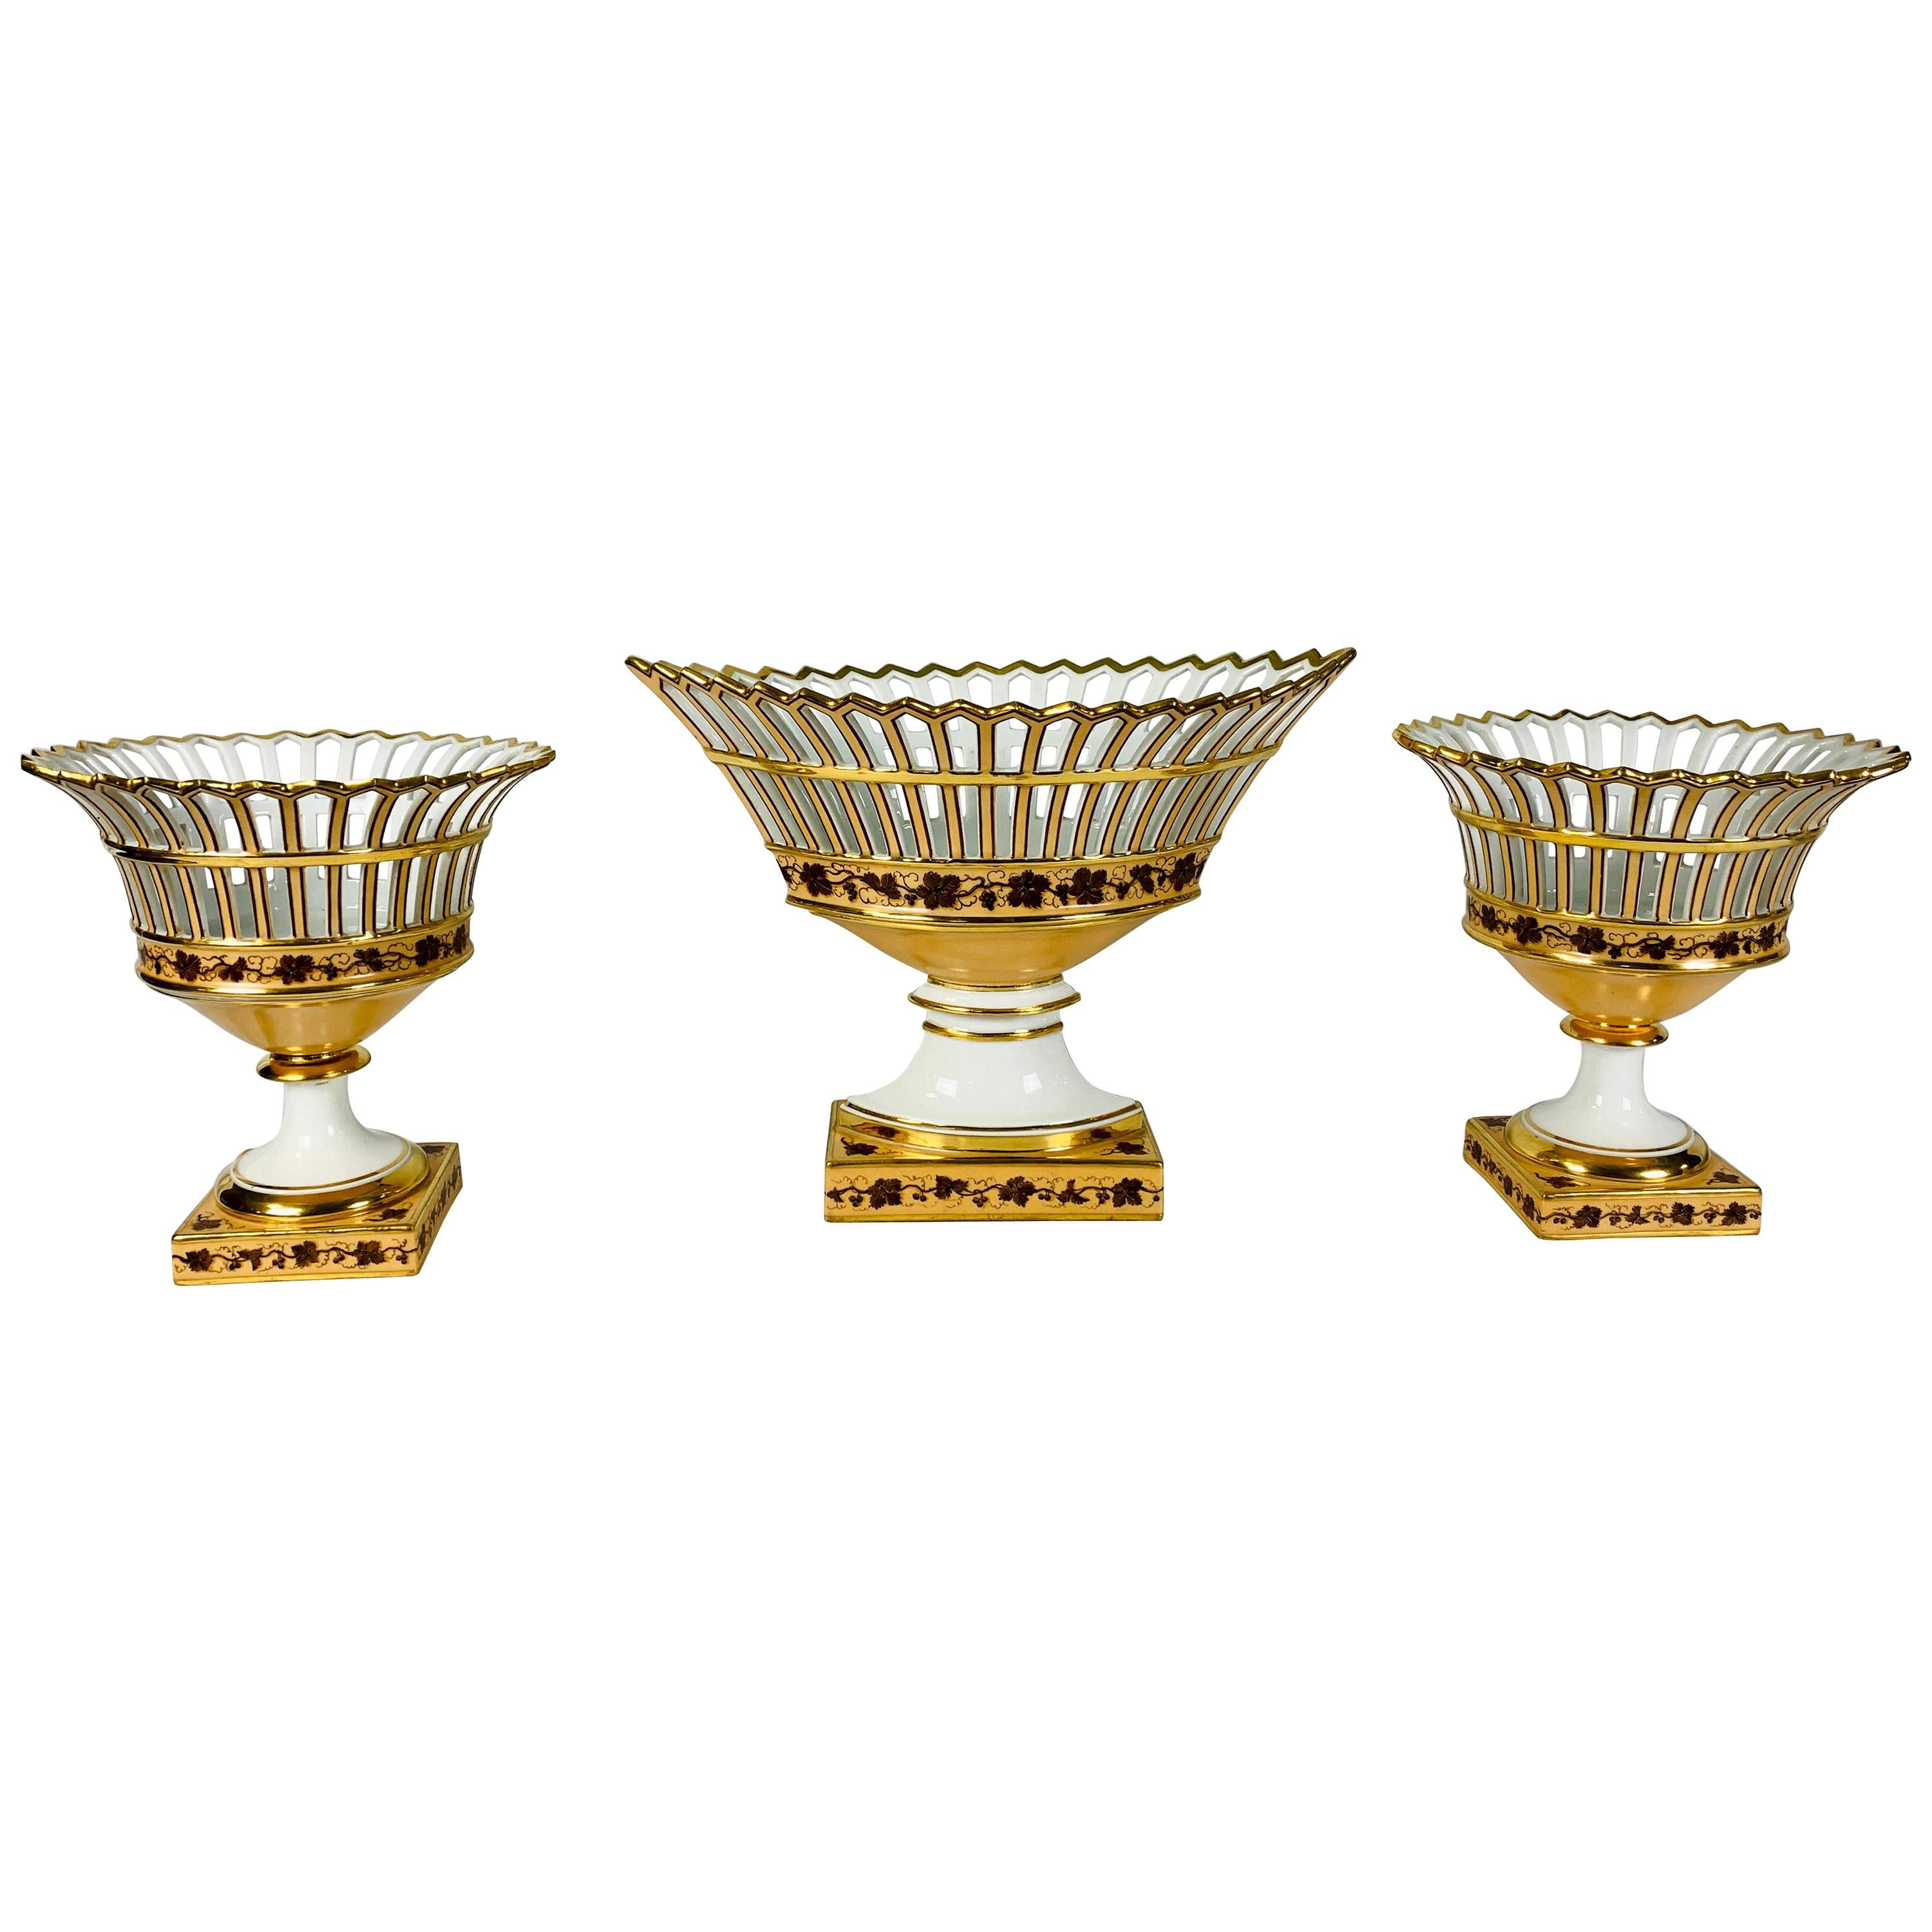 Paris Porcelain Set of Three French Antique Porcelain Baskets Made, circa 1840